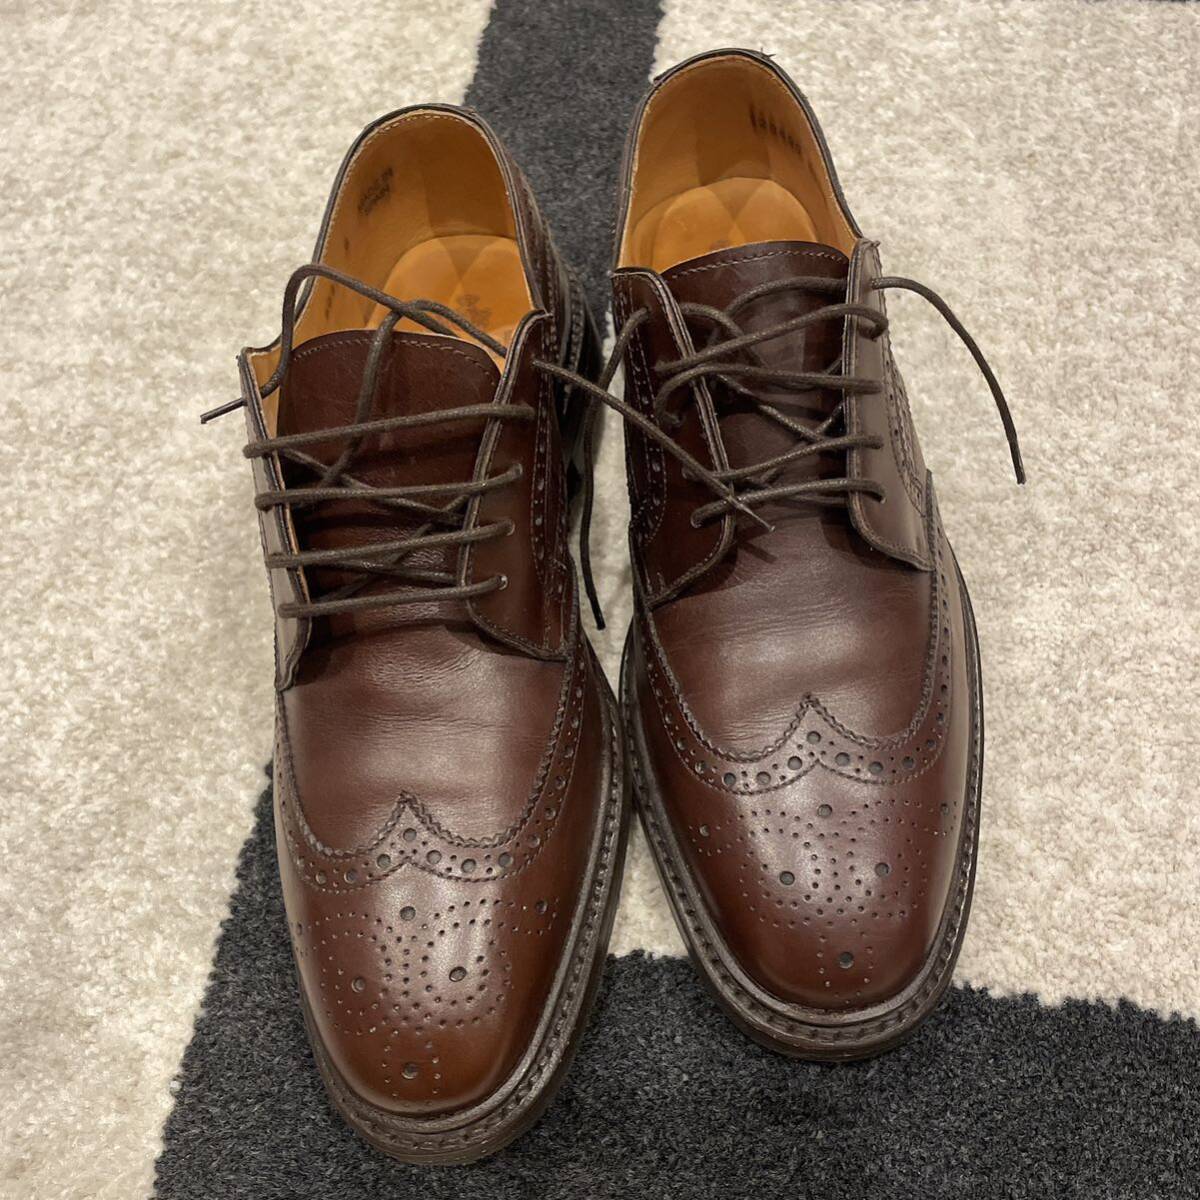 ⑩ ほぼ新品 Berwick バーウィック ウィングチップ 革靴 レザーシューズ 6 ブラウン レザー ウイングチップ 靴 茶 メンズの画像3